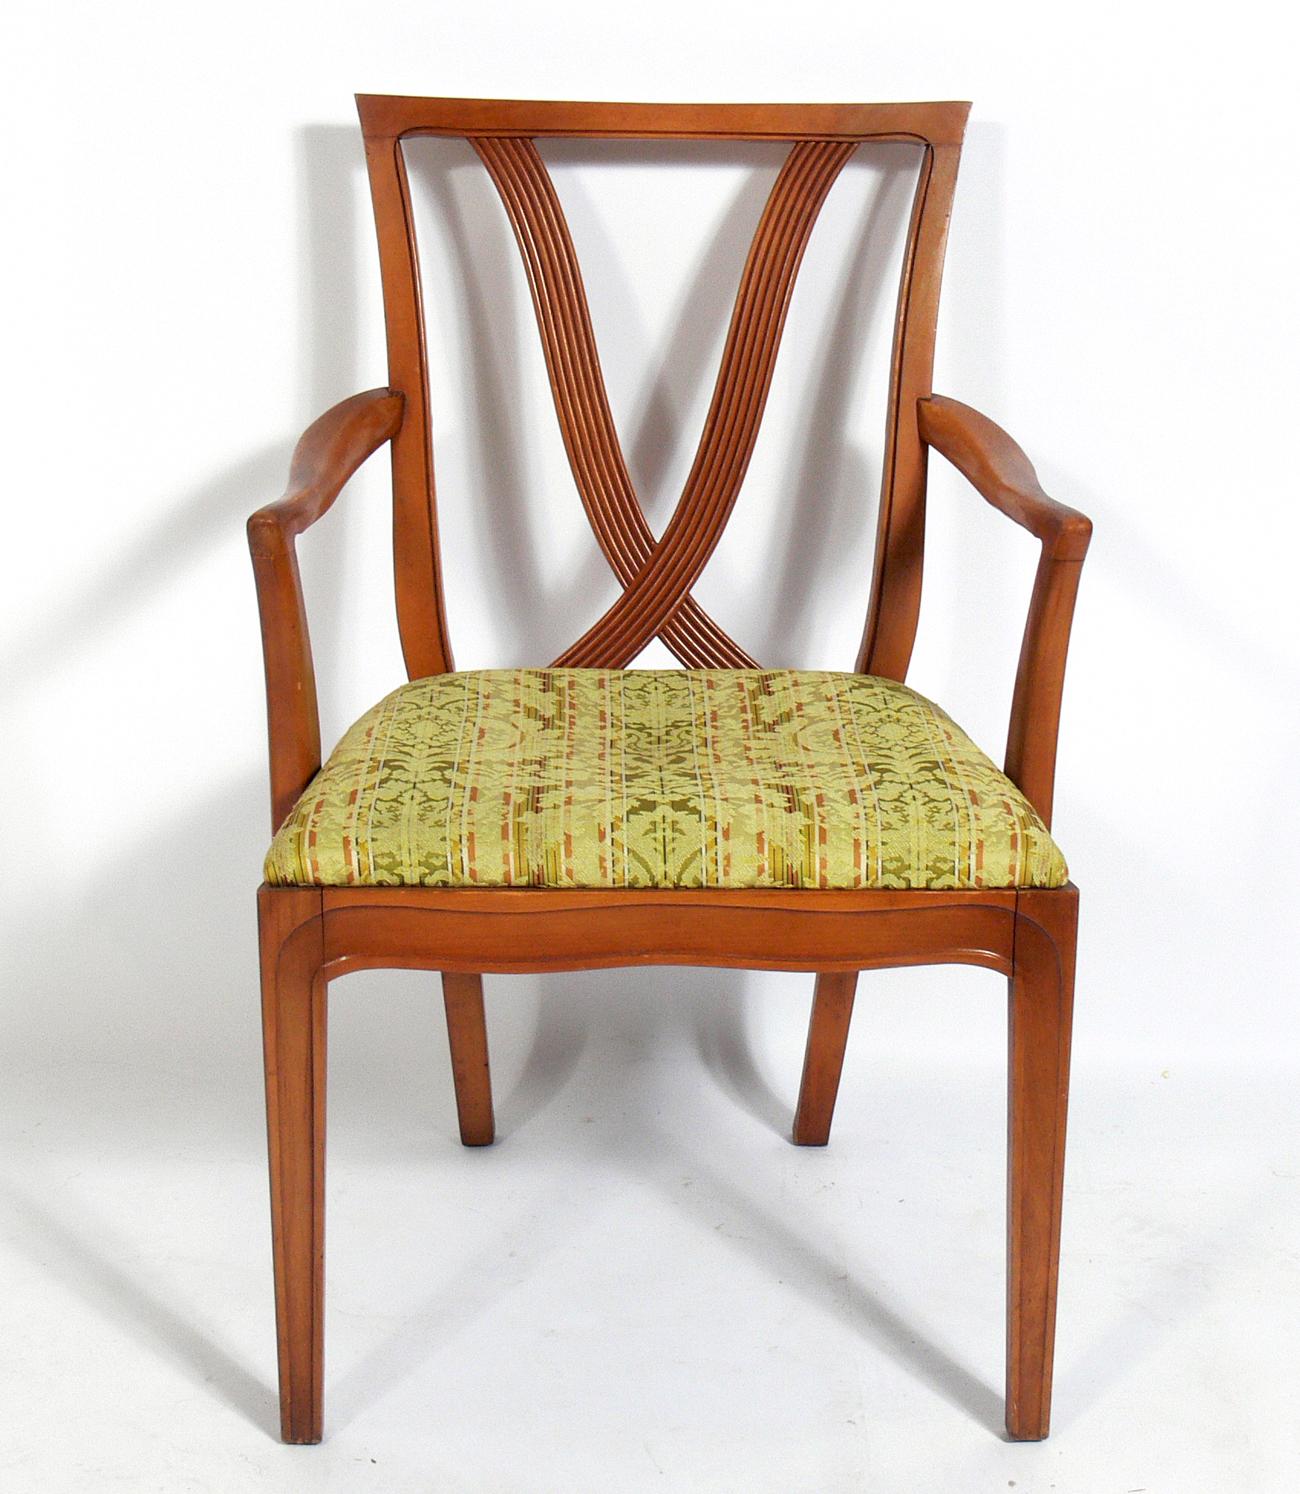 Chaises de salle à manger glamour à dossier en X, conçues par Tomlinson, américain, vers les années 1950. Ces chaises sont actuellement en cours de finition et de retapissage et peuvent être réalisées dans la couleur et le tissu de votre choix. Le